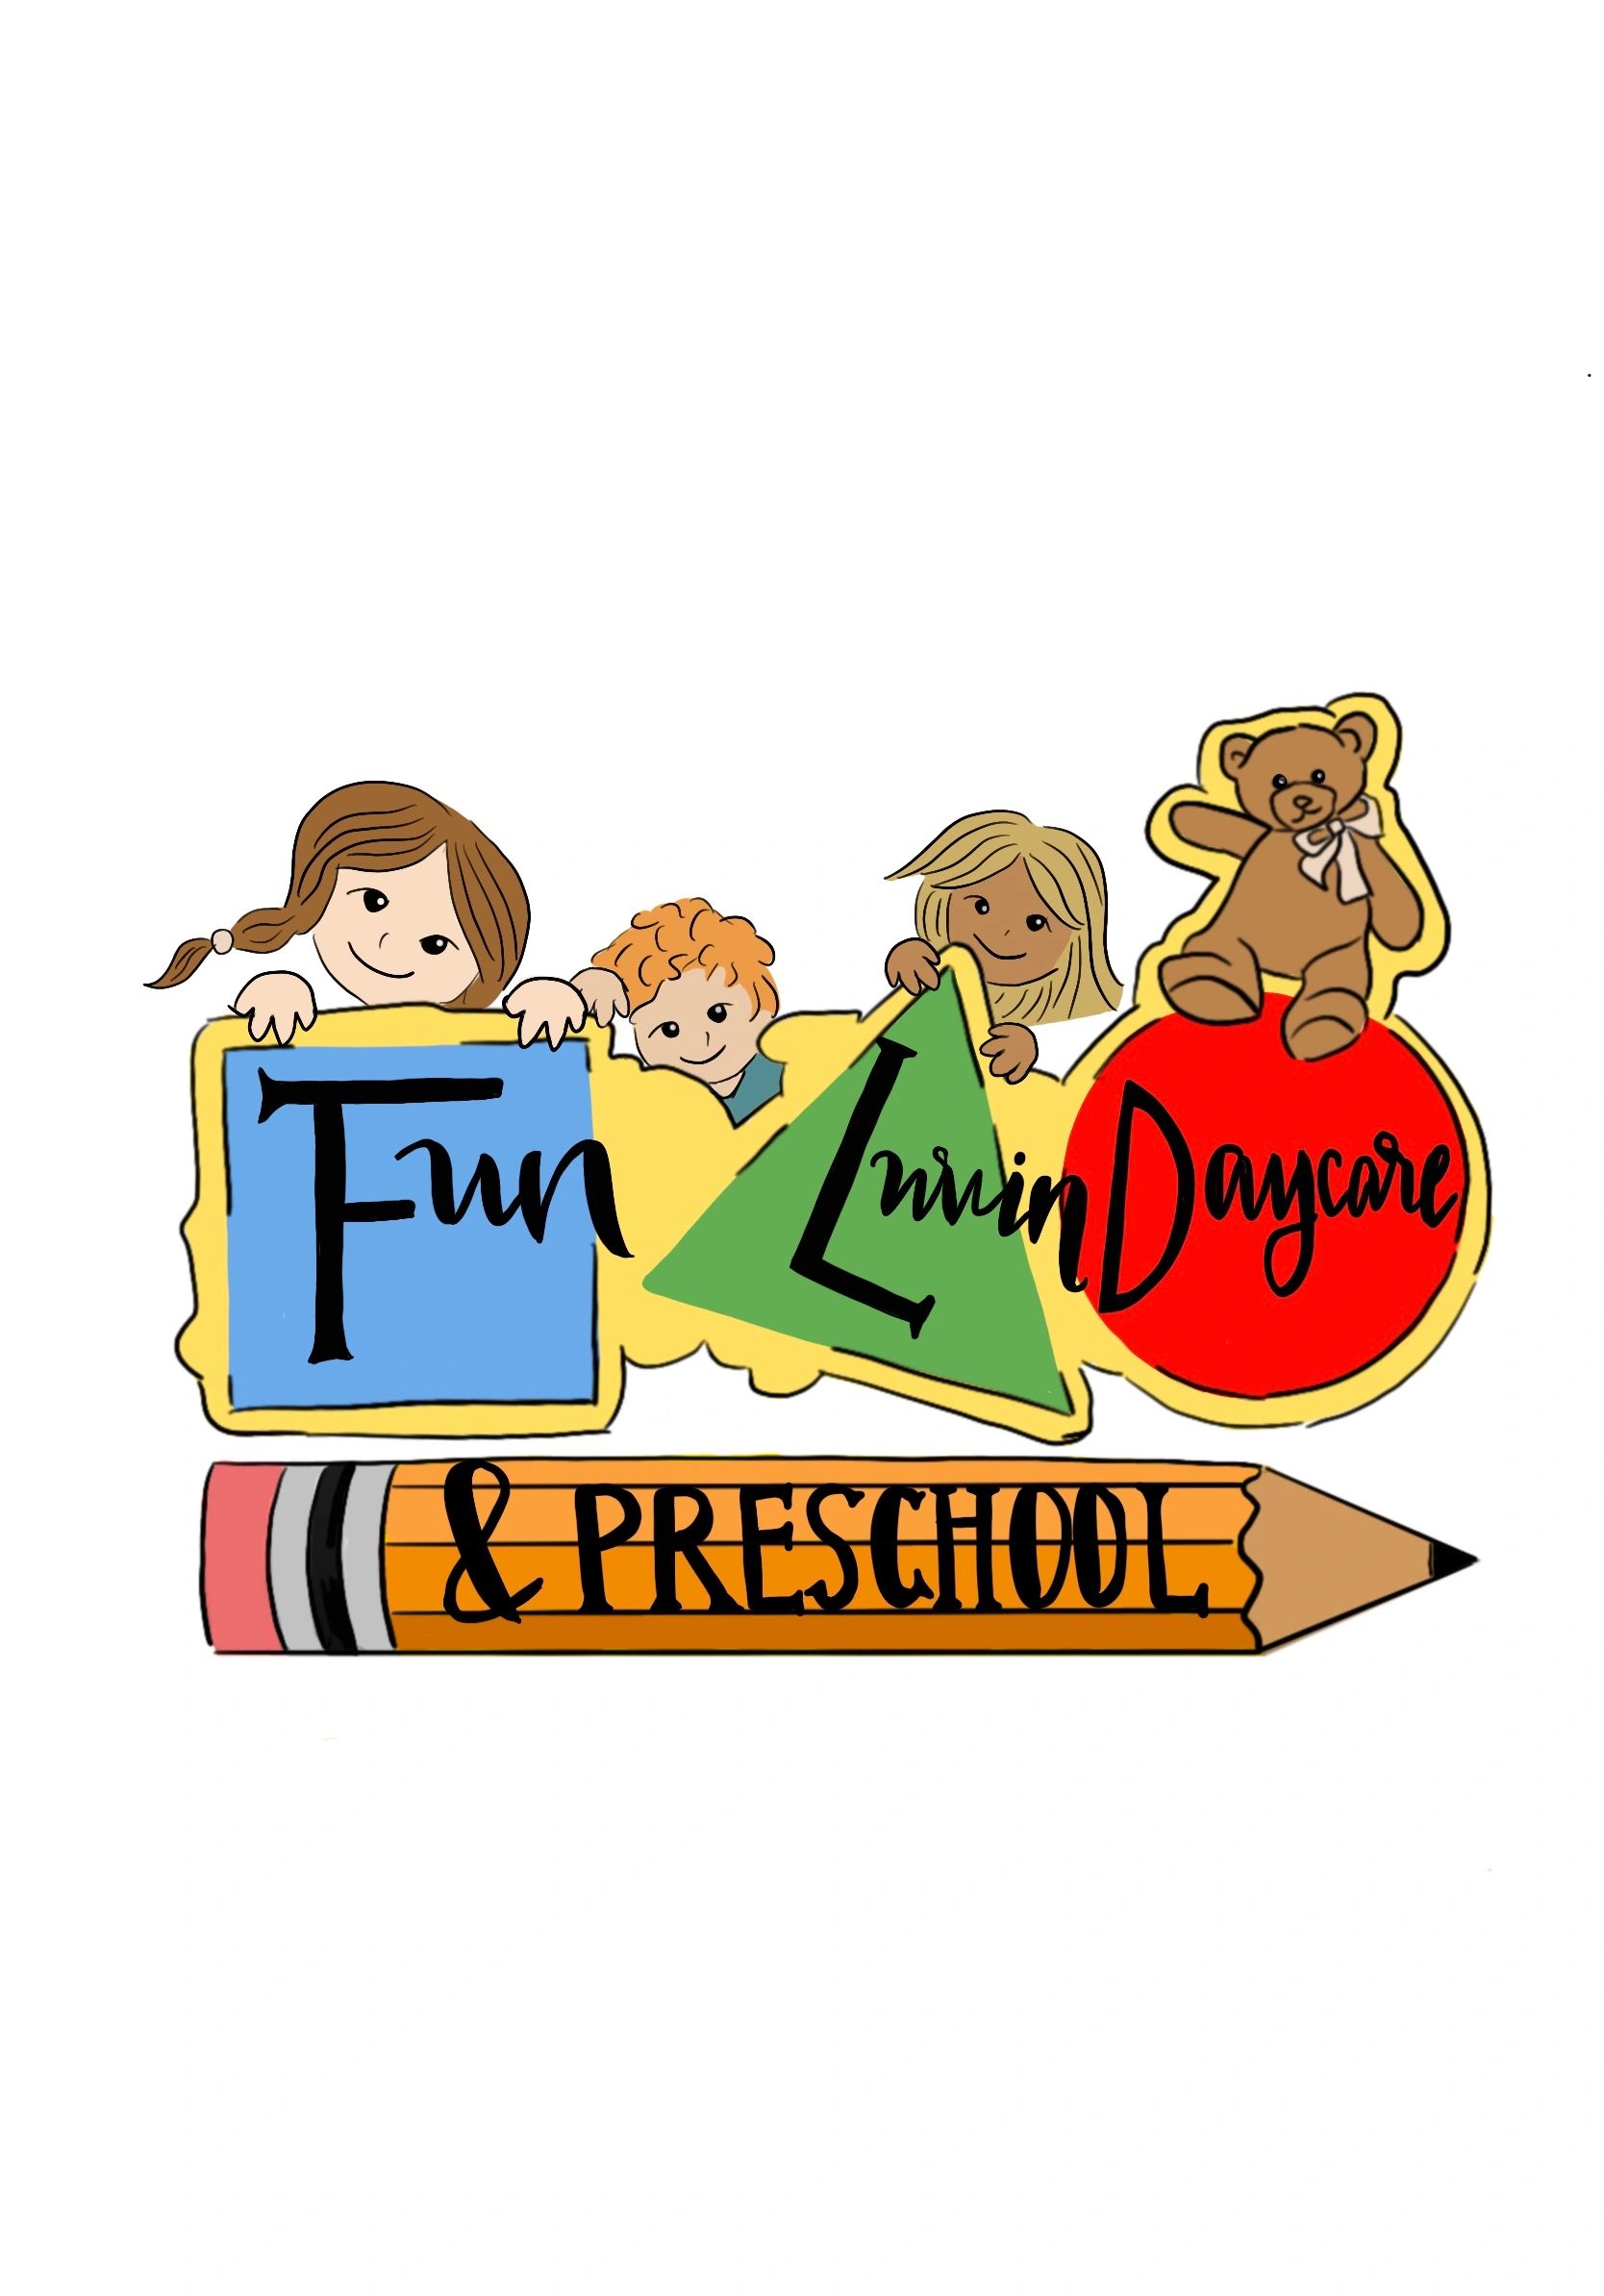 Fun Luvin Daycare Center - Daycare, Child Care, Daycare, Preschool